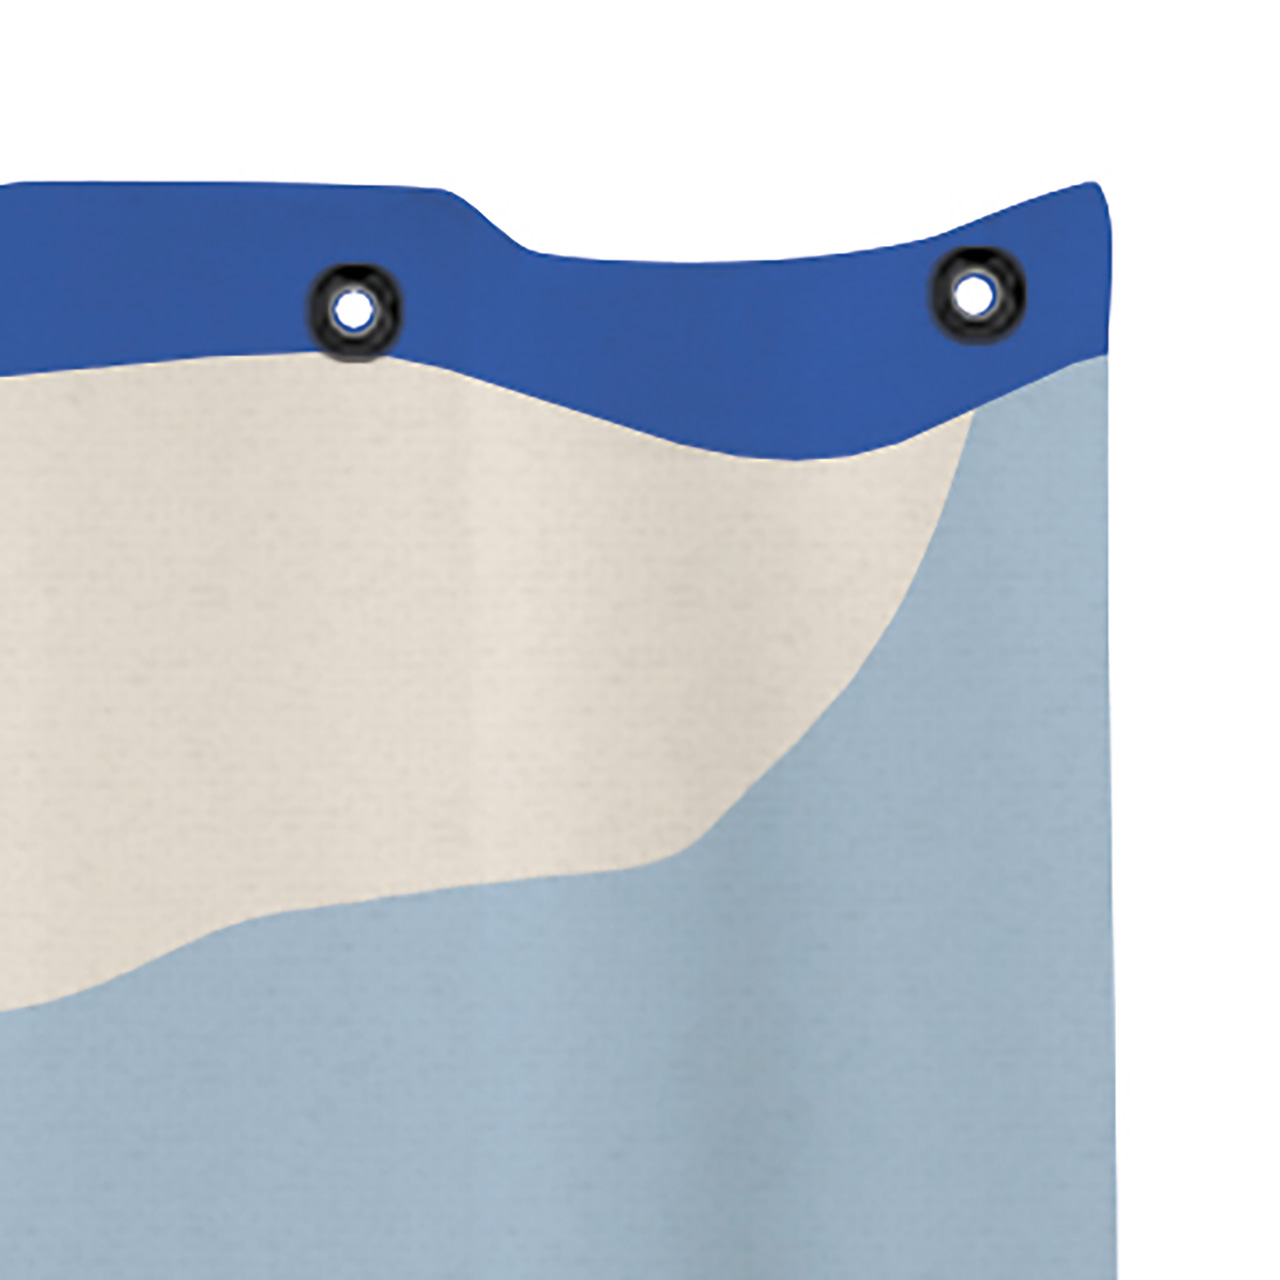 Textil Duschvorhang Duschvorhang.de, einfach Arte 150x200 Nova | Duschvorhänge gute blau